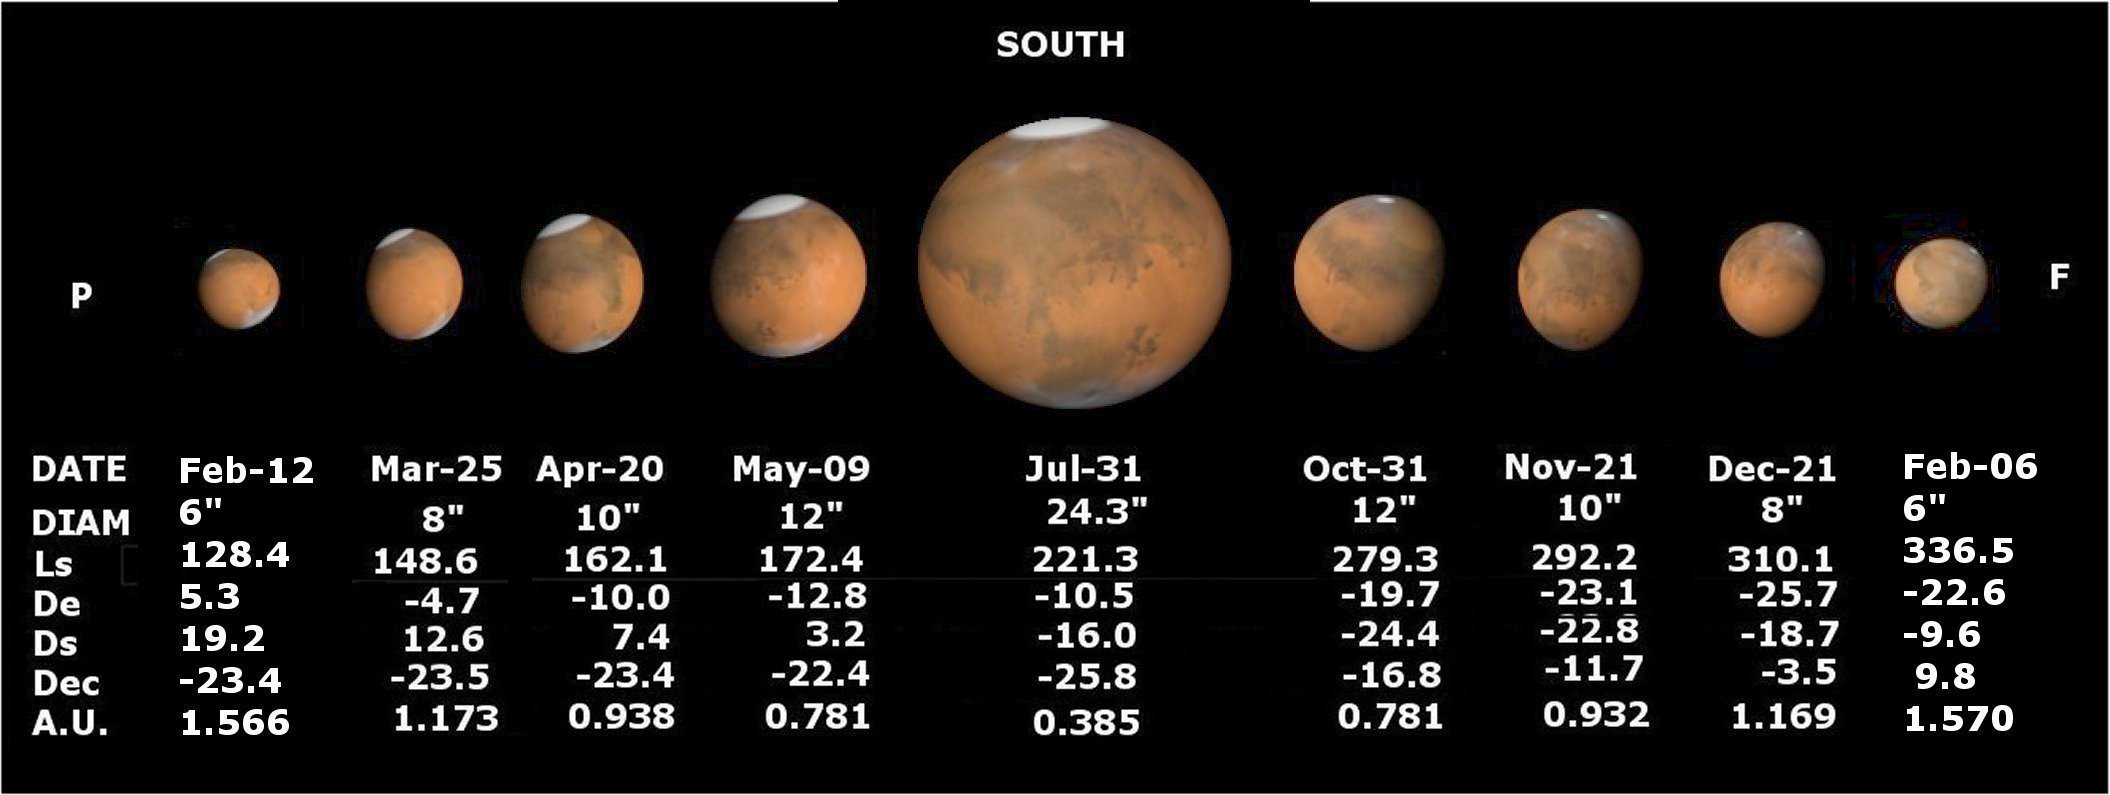 L'opposition de Mars en 2018 2018.jpg.a607261f80c9fd1c49833d1af8b631aa